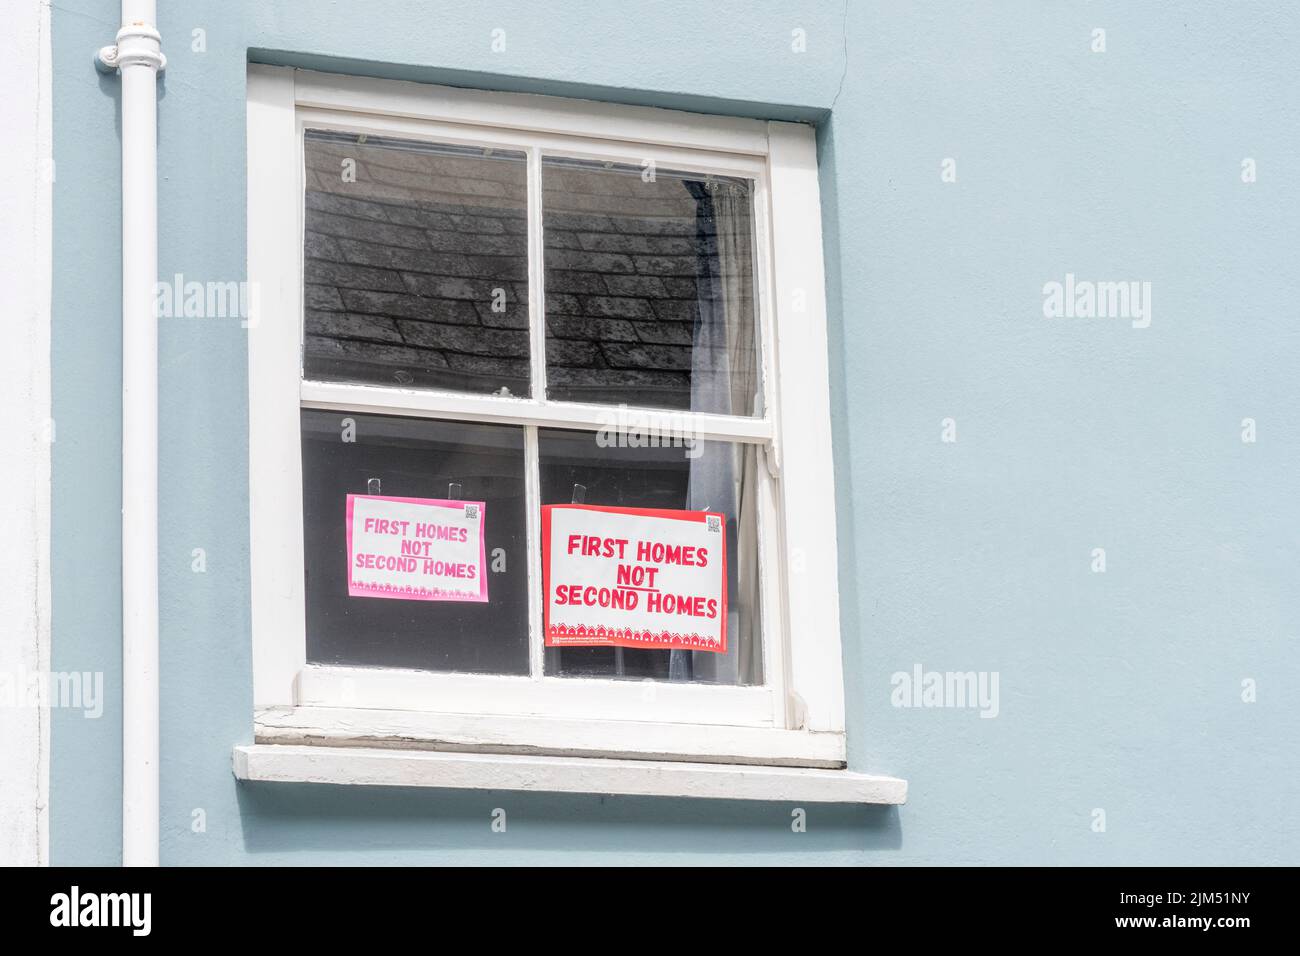 Los primeros hogares no los segundos aviso de los hogares exhibidos en la ventana delantera de la vieja casa en Lostwithiel, Cornwall en referencia a los dueños segundos caseros de Cornwall. Foto de stock